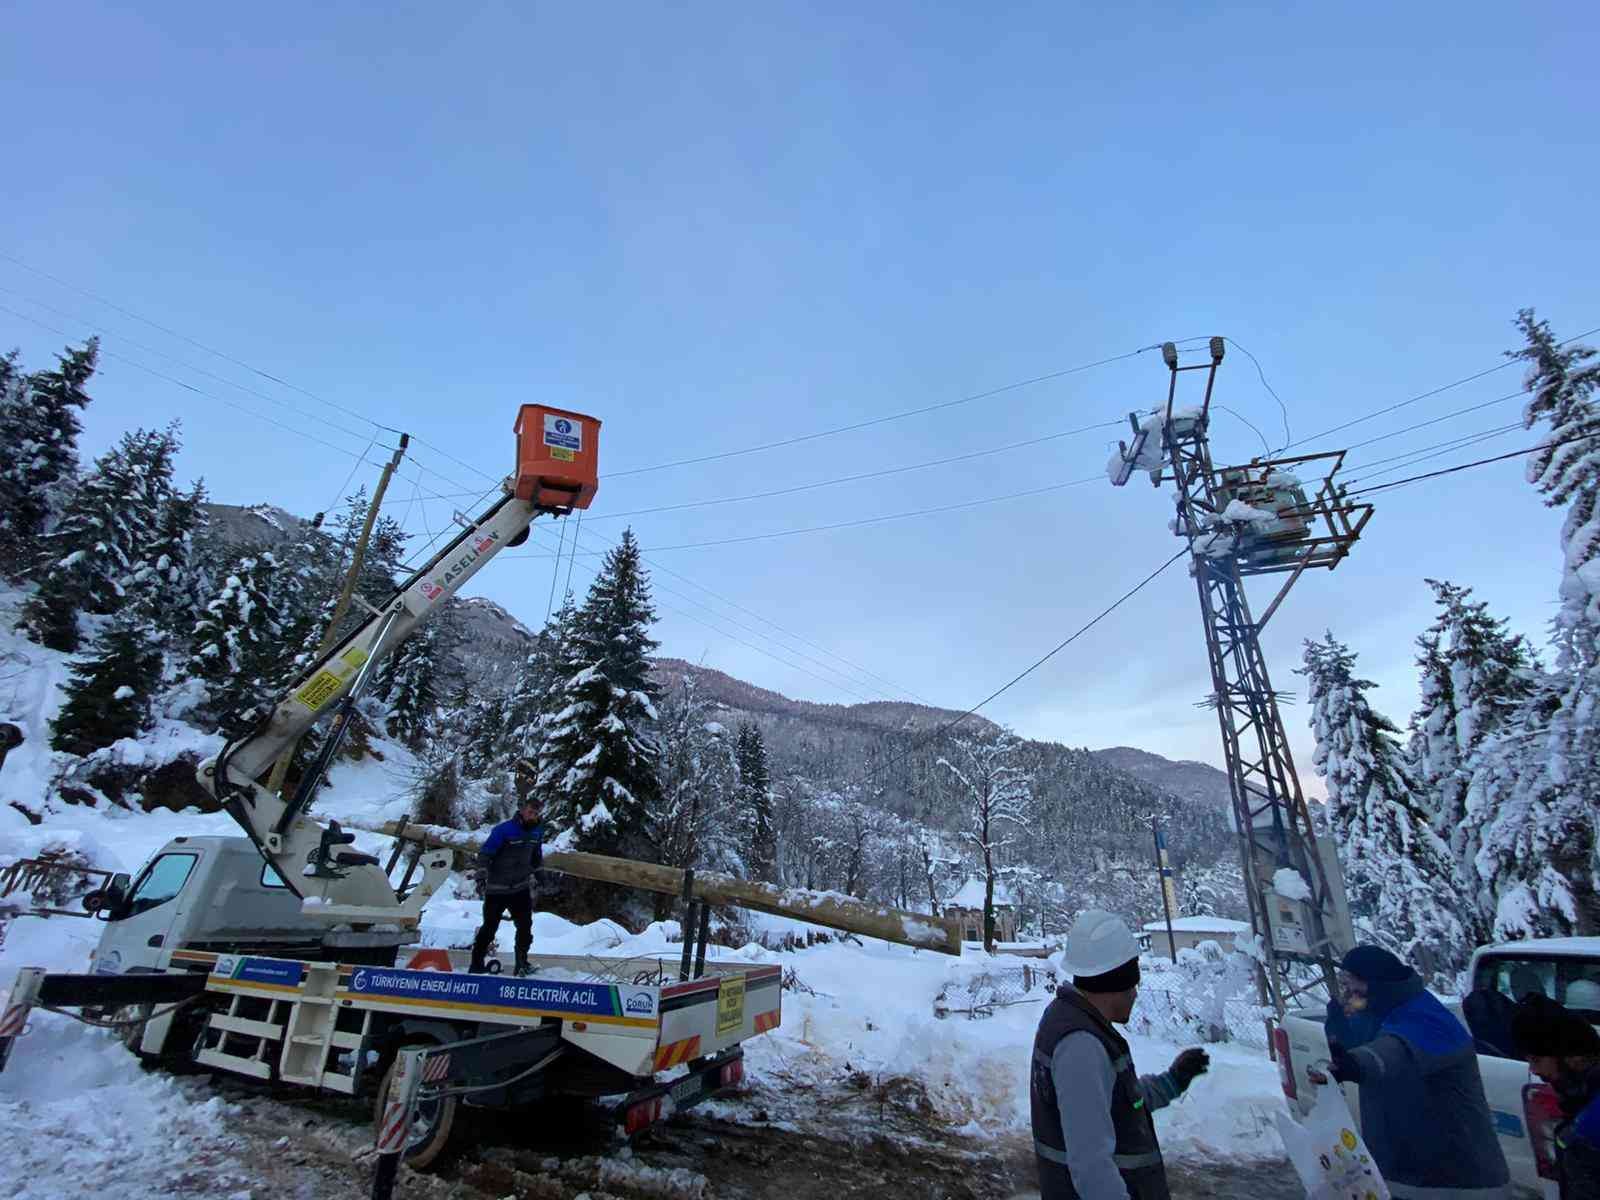 Artvin’de elektrik dağıtım şirketi çalışanlarının yoğun kar mesaisi #artvin